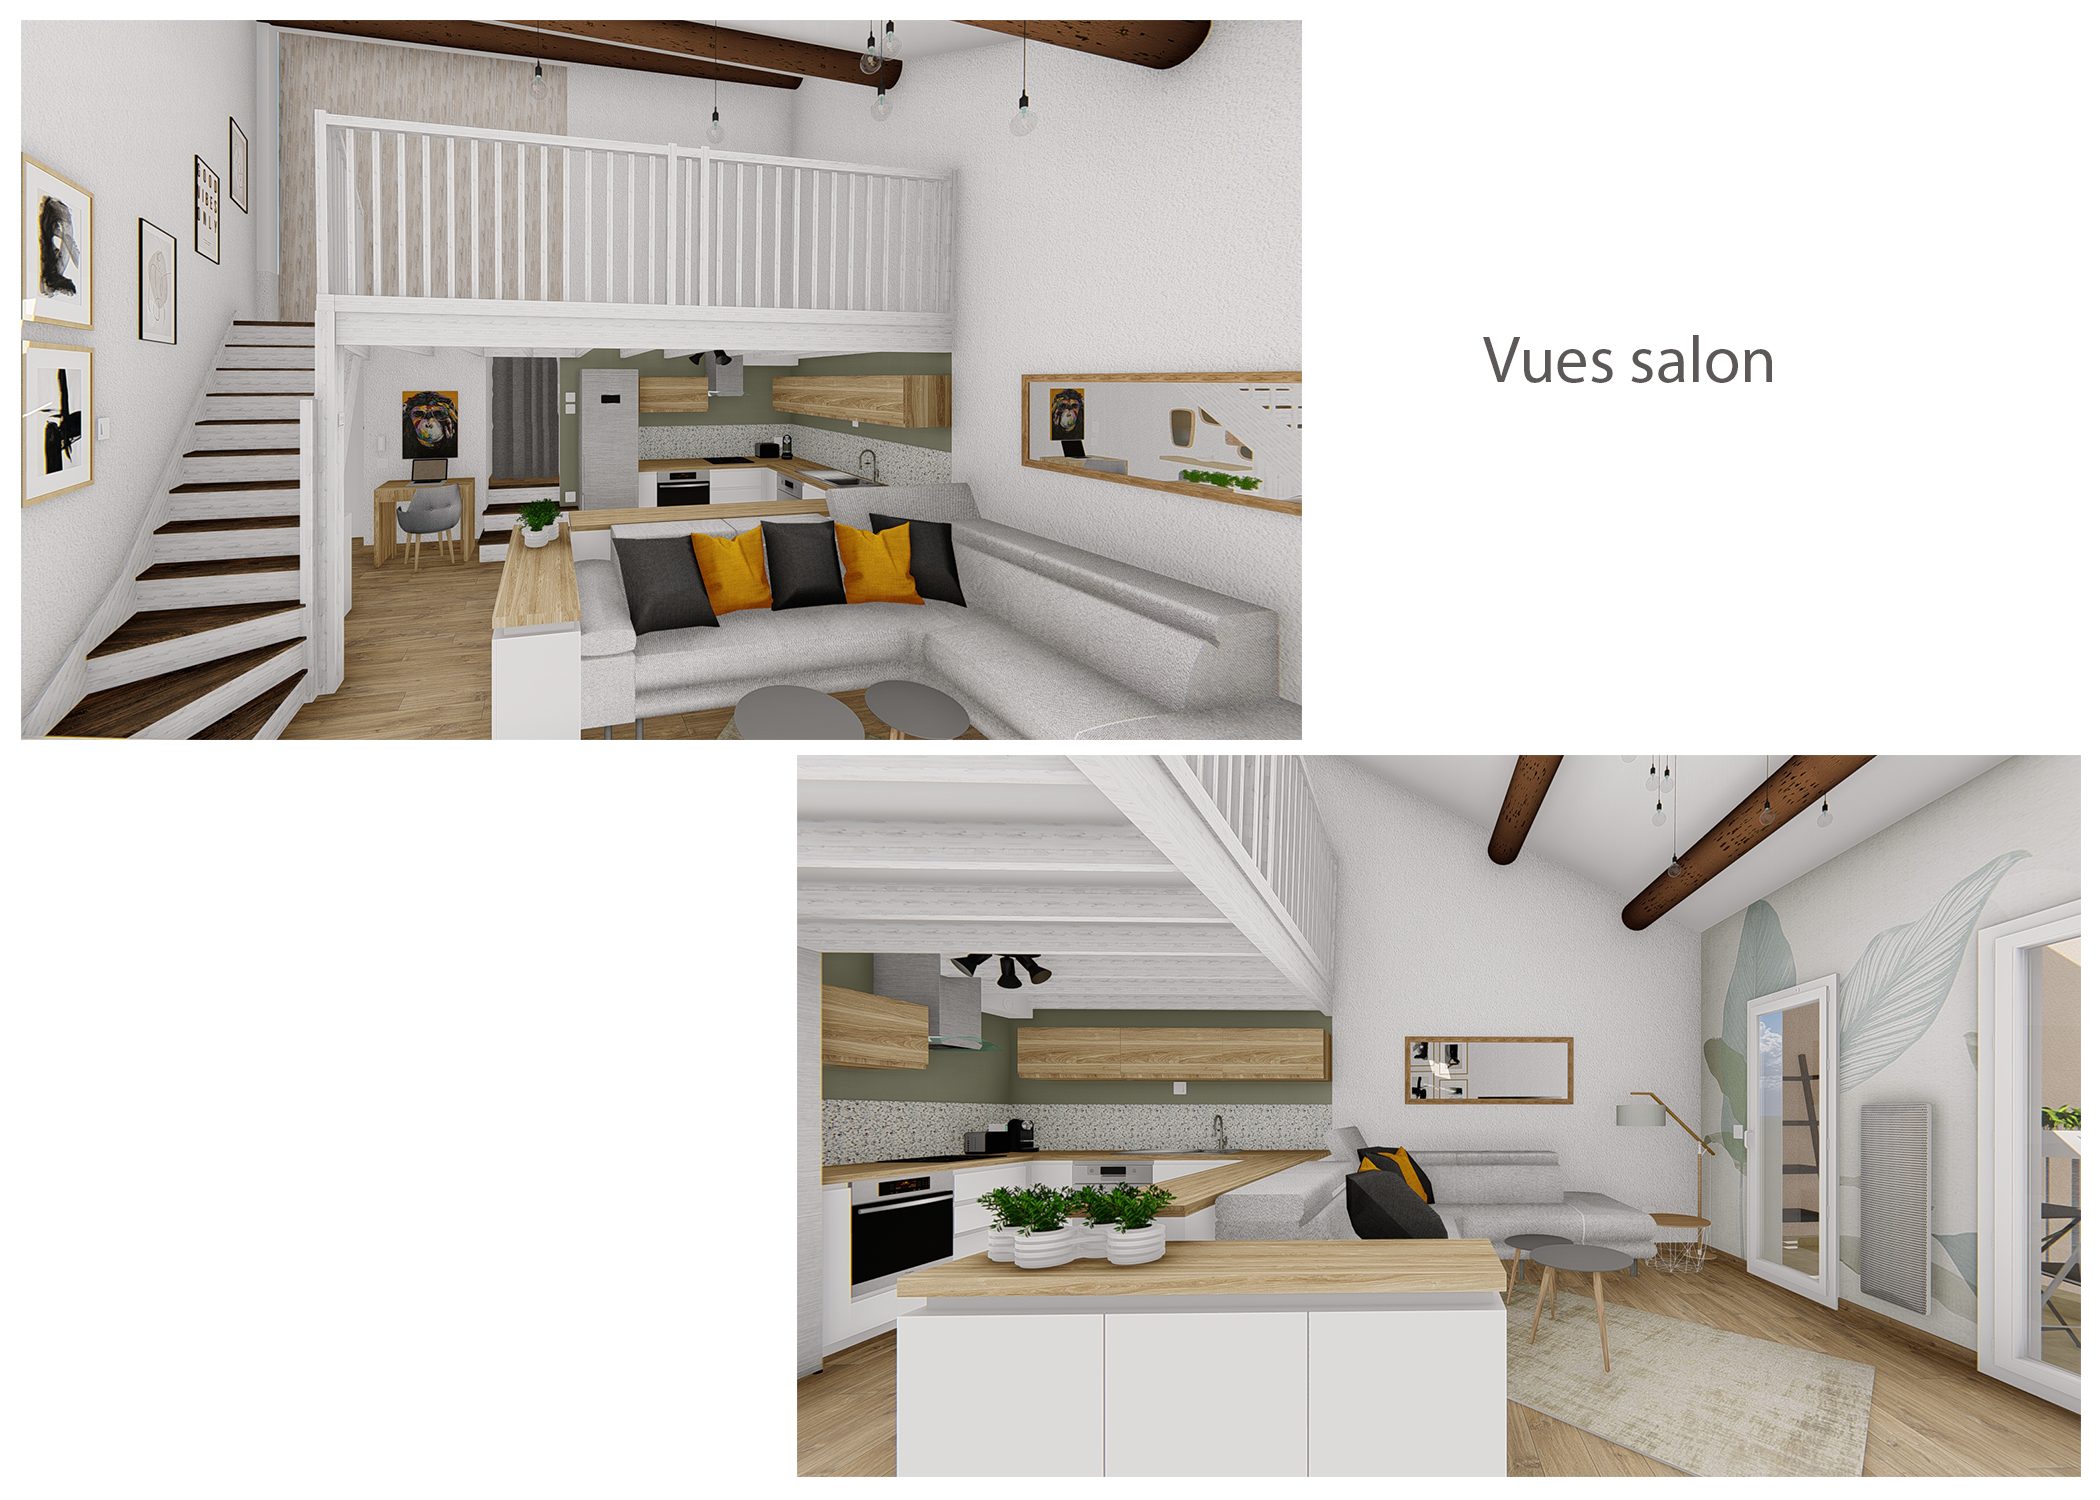 agencement-decoration-espace de vie rousset-vues salon 2-dekho design